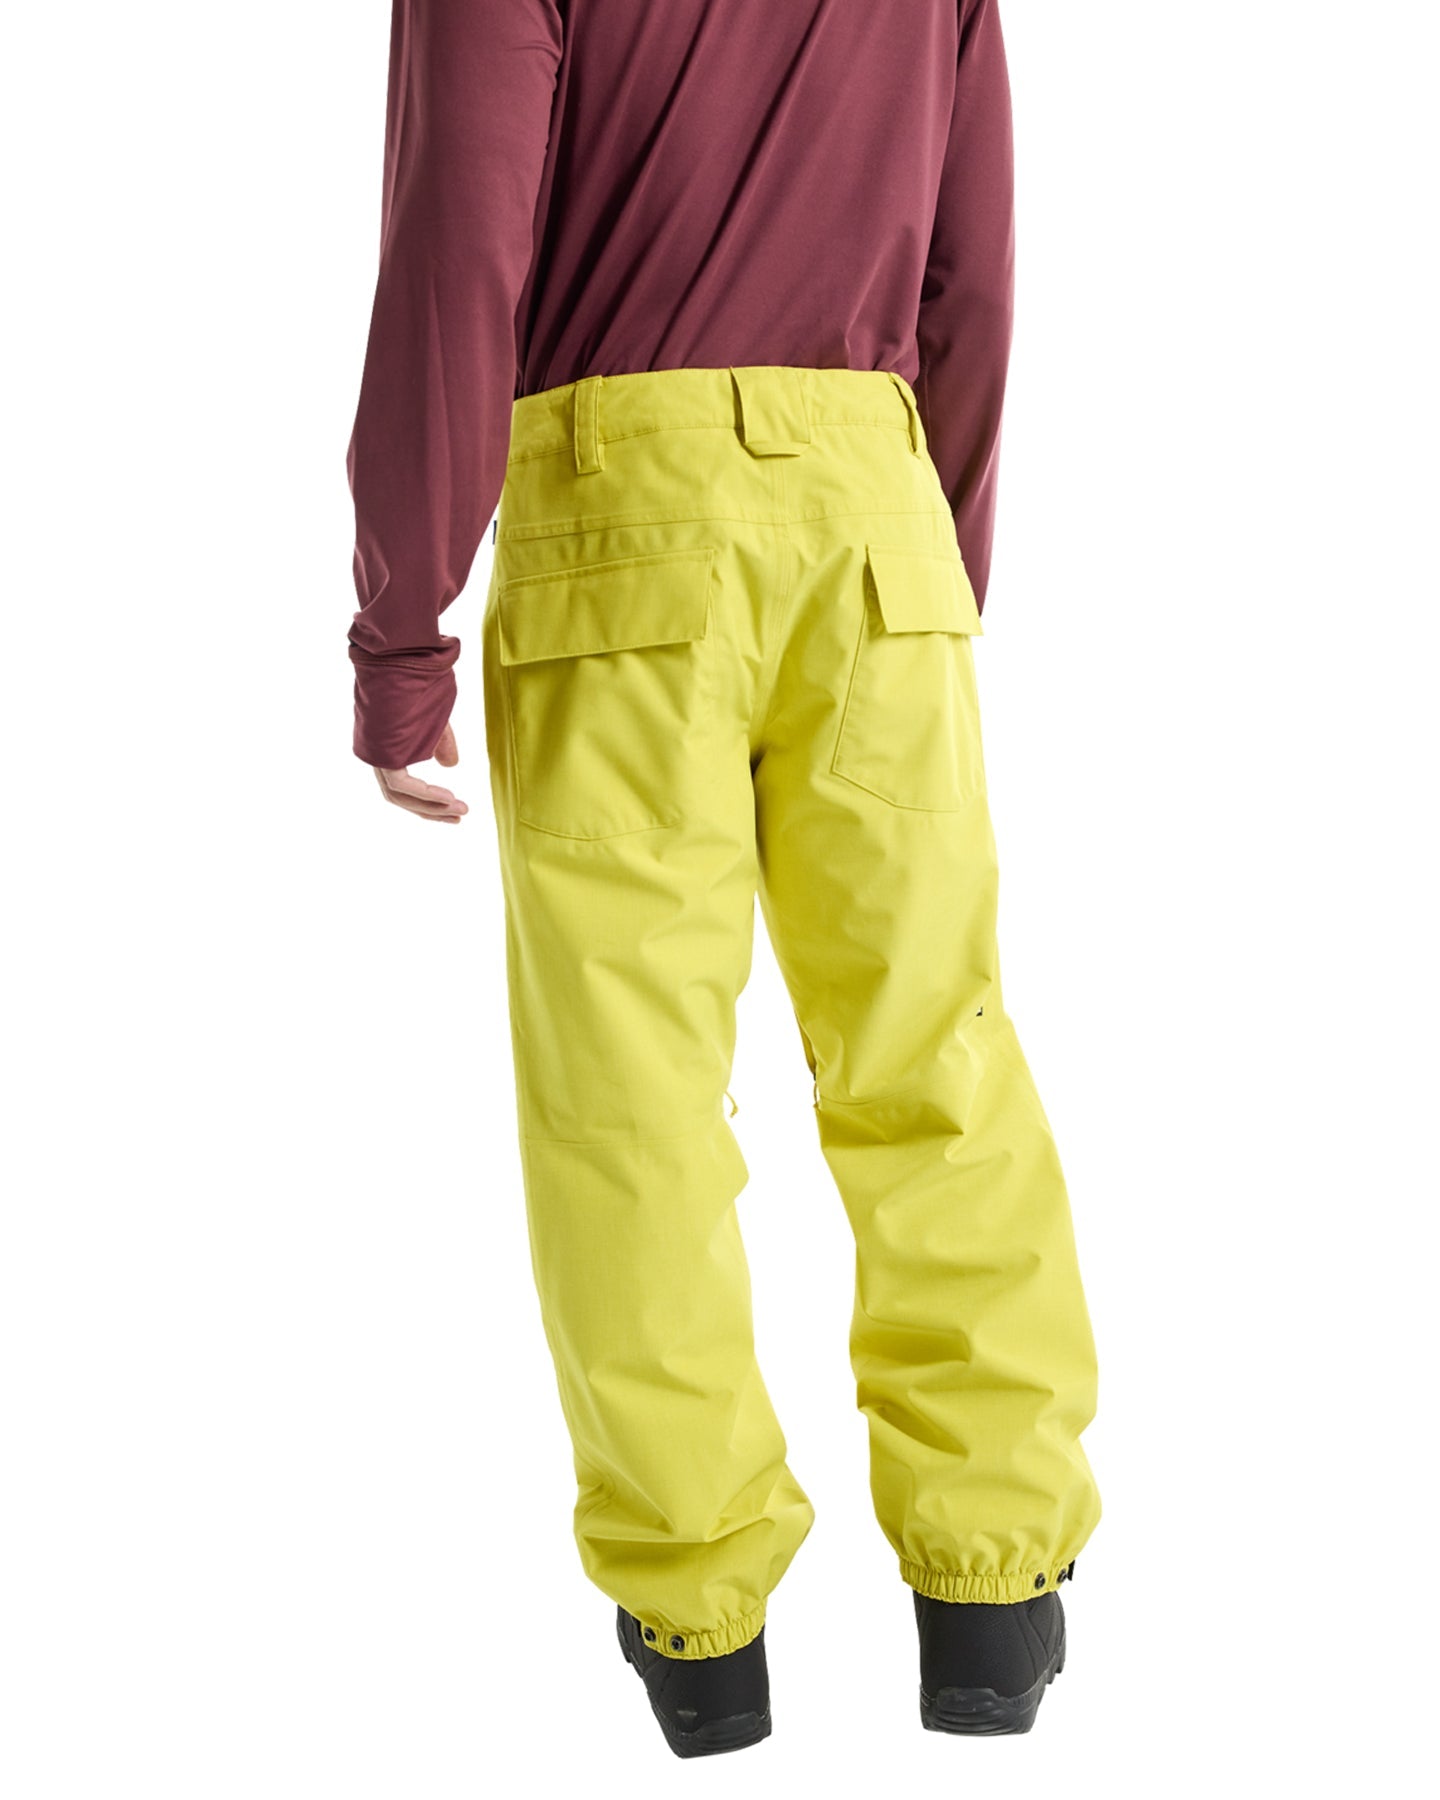 Burton Men's Melter Plus 2L Pants - Sulfur Men's Snow Pants - Trojan Wake Ski Snow